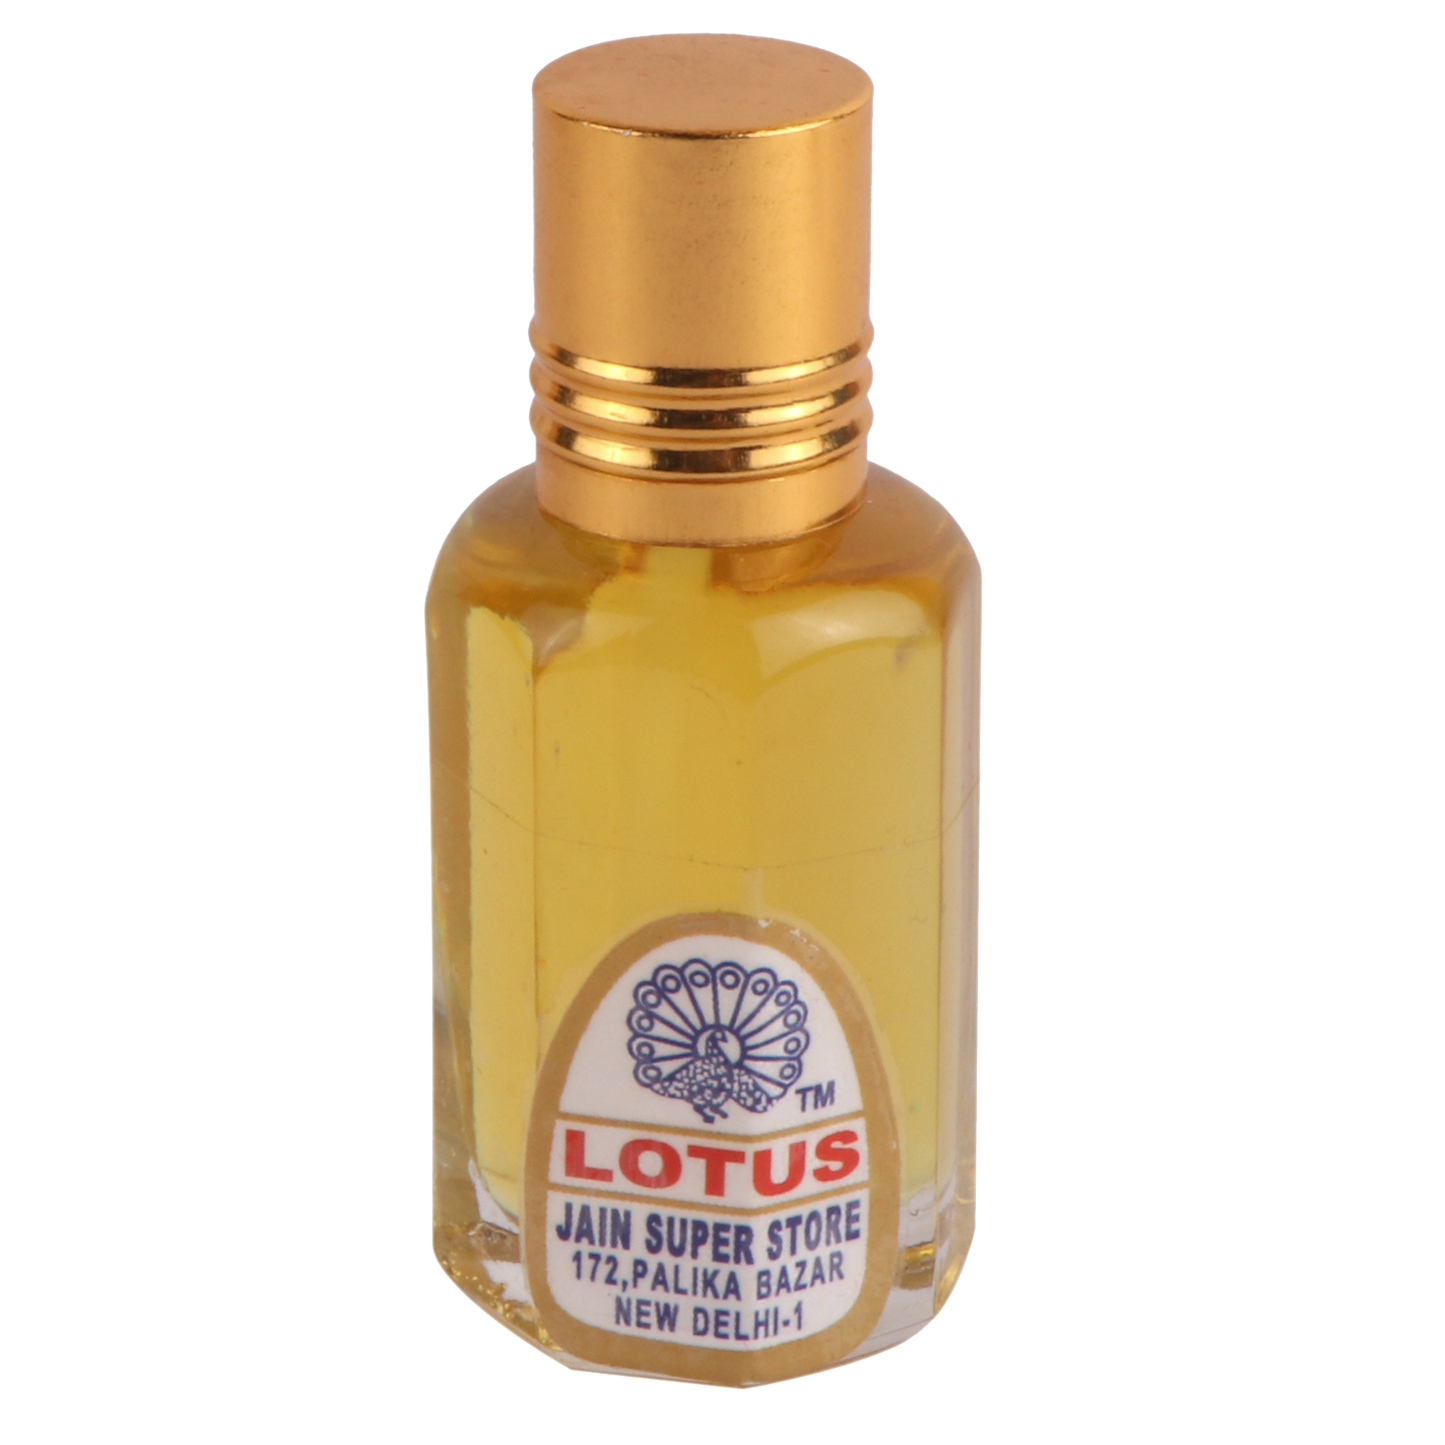 Lotus Attar Perfume